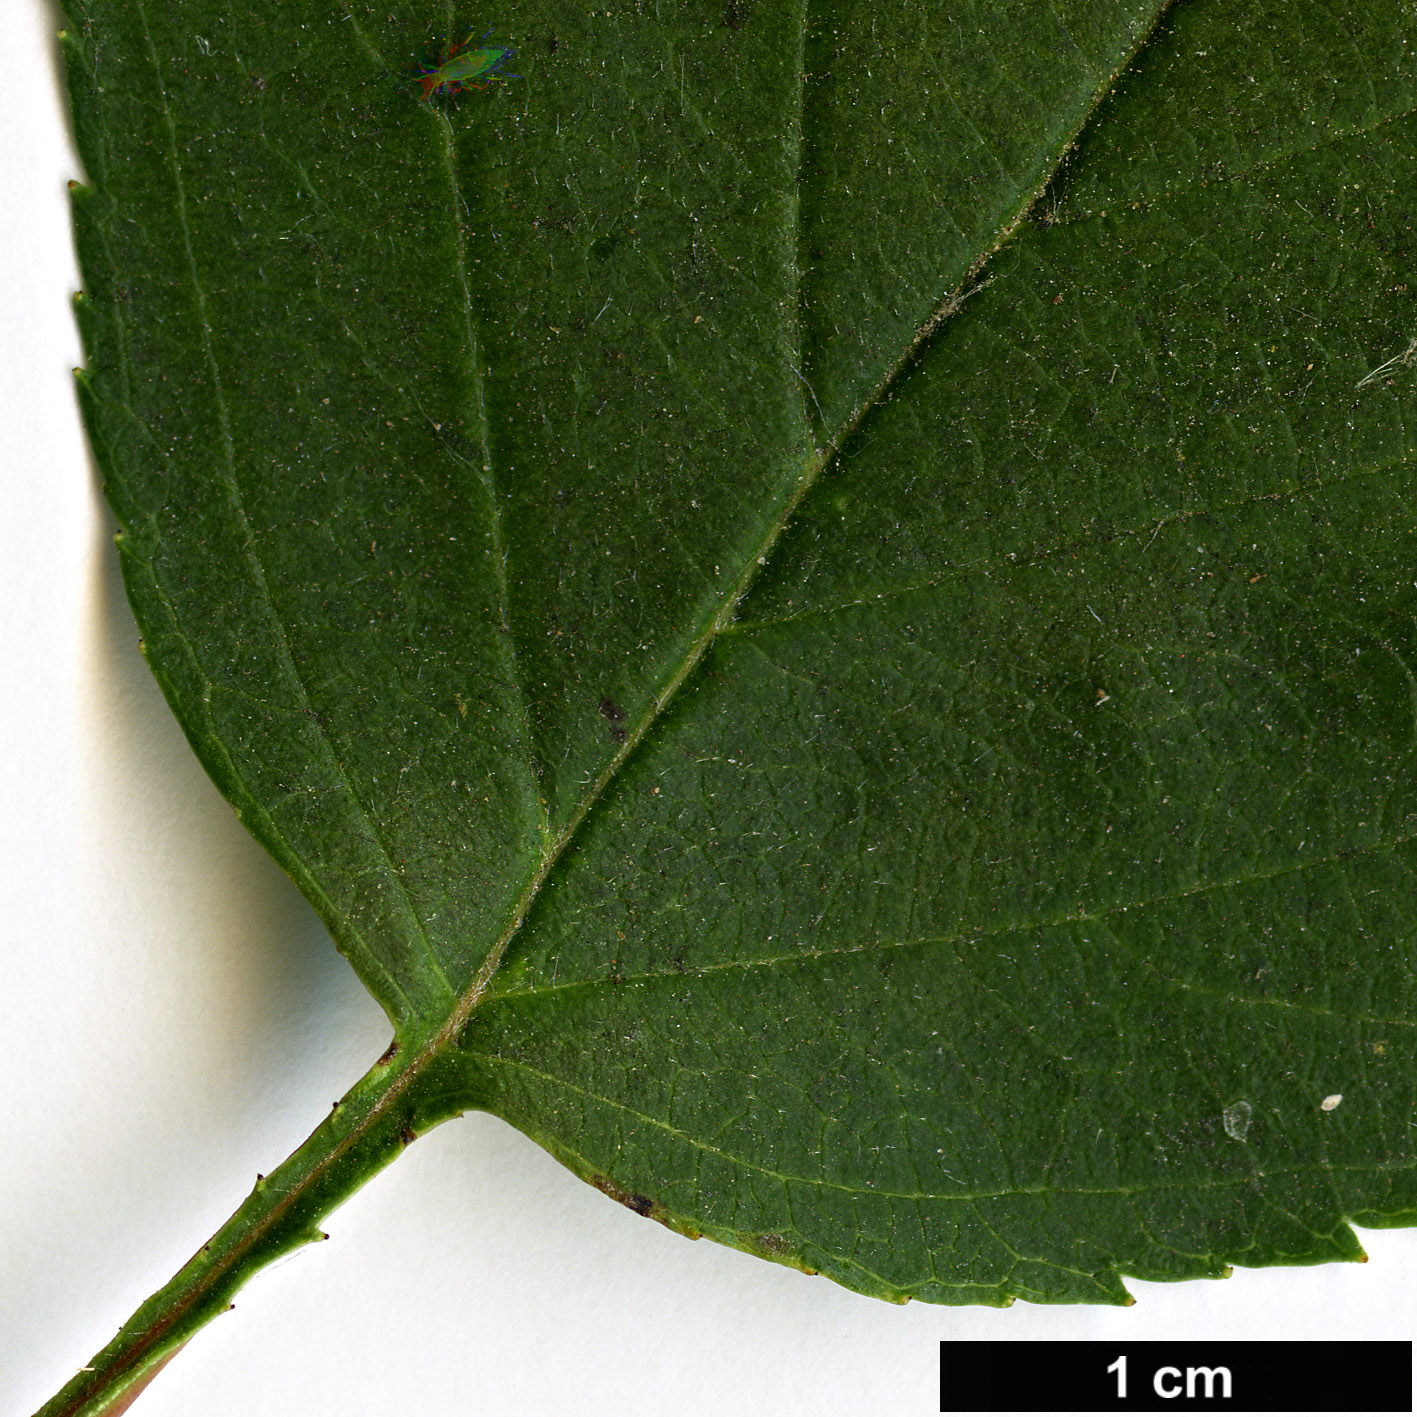 High resolution image: Family: Rosaceae - Genus: Crataegus - Taxon: iracunda - SpeciesSub: var. populnea